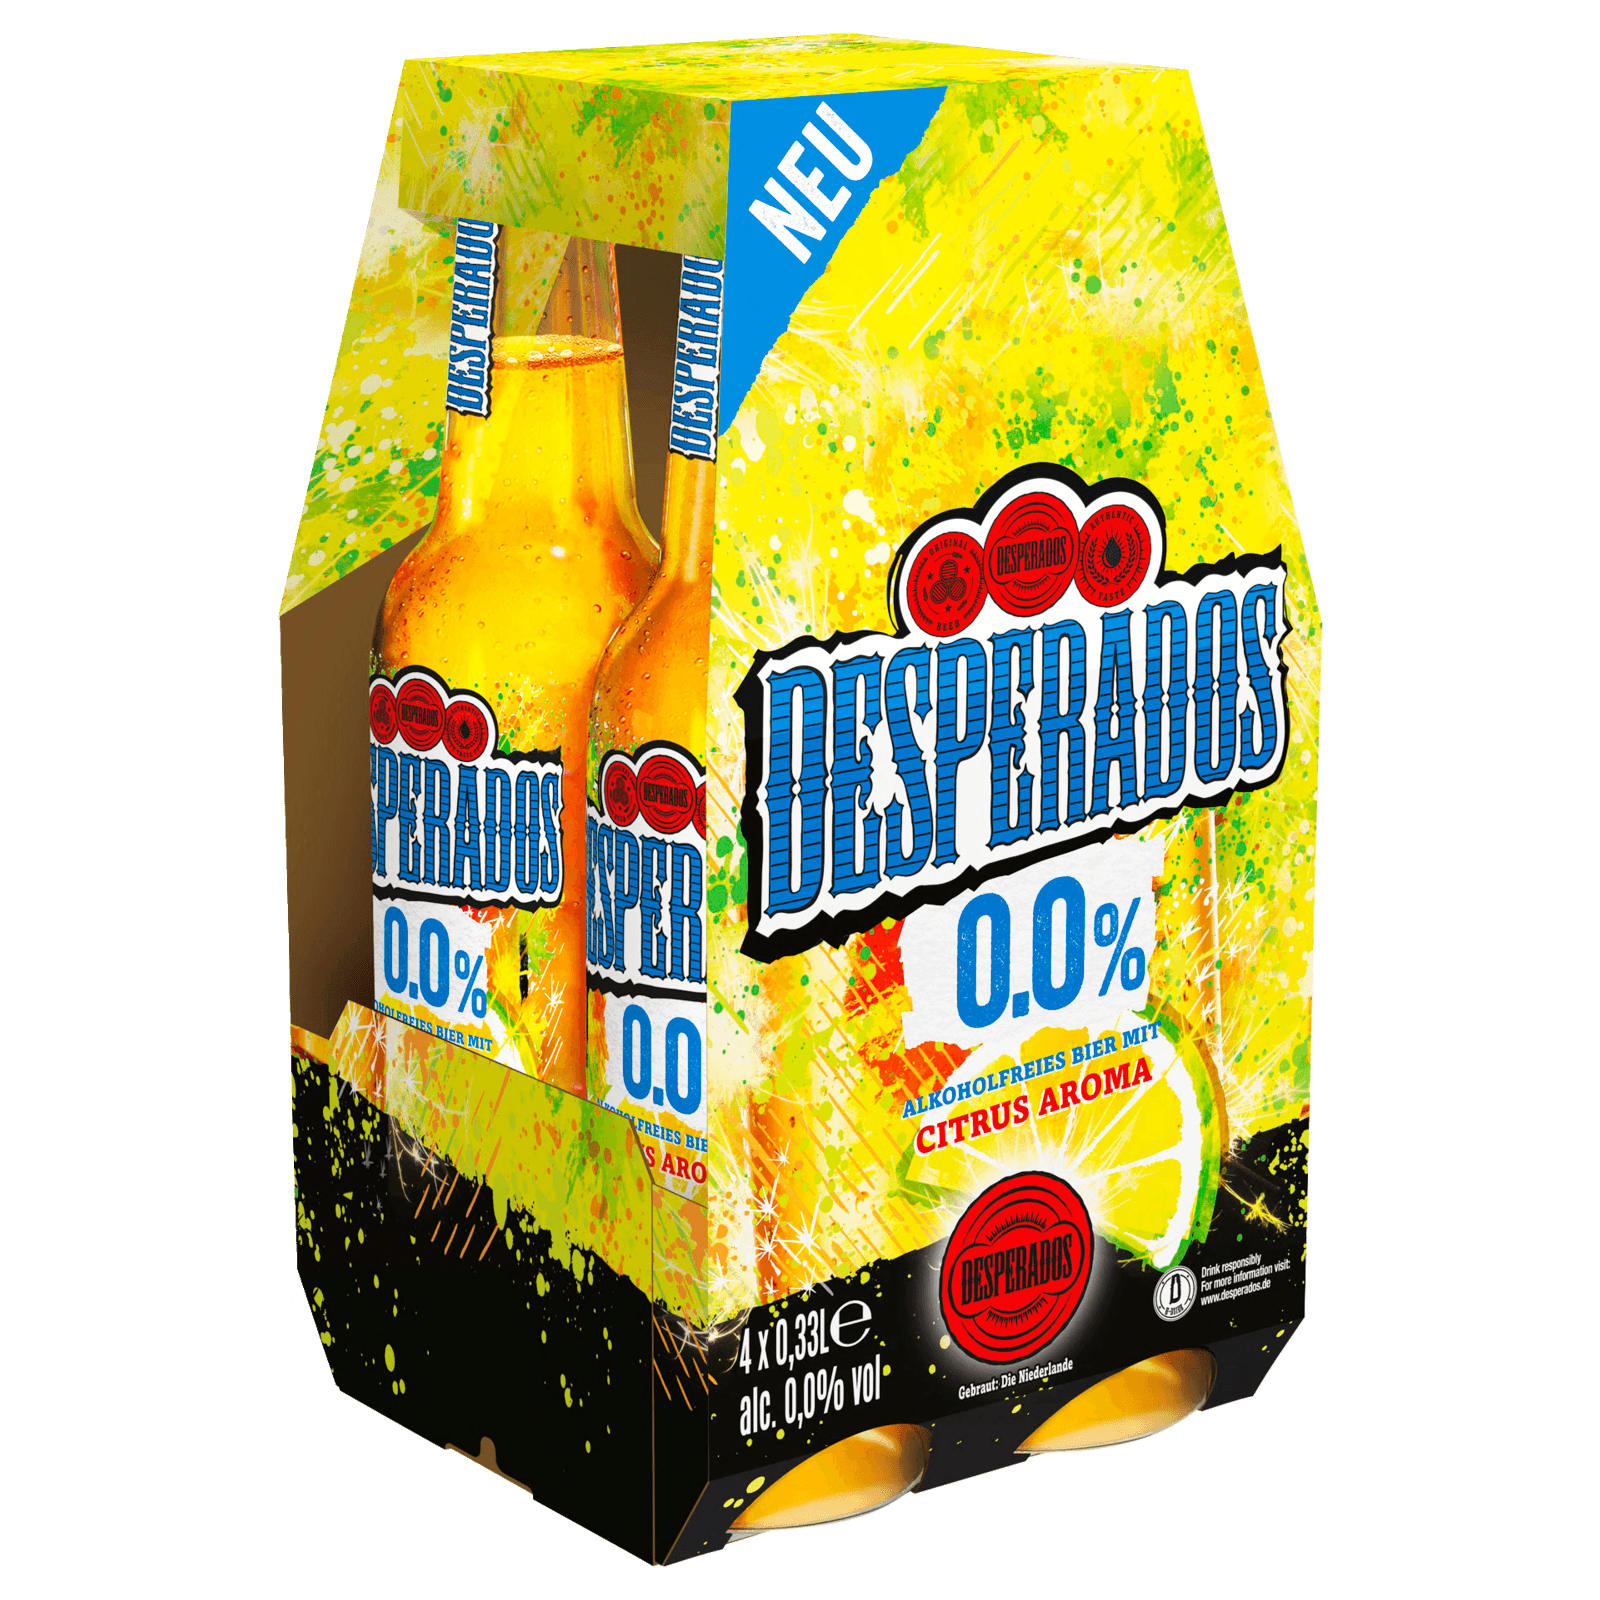 Desperados Tequila Beer - Where to Buy Near Me - BeerMenus